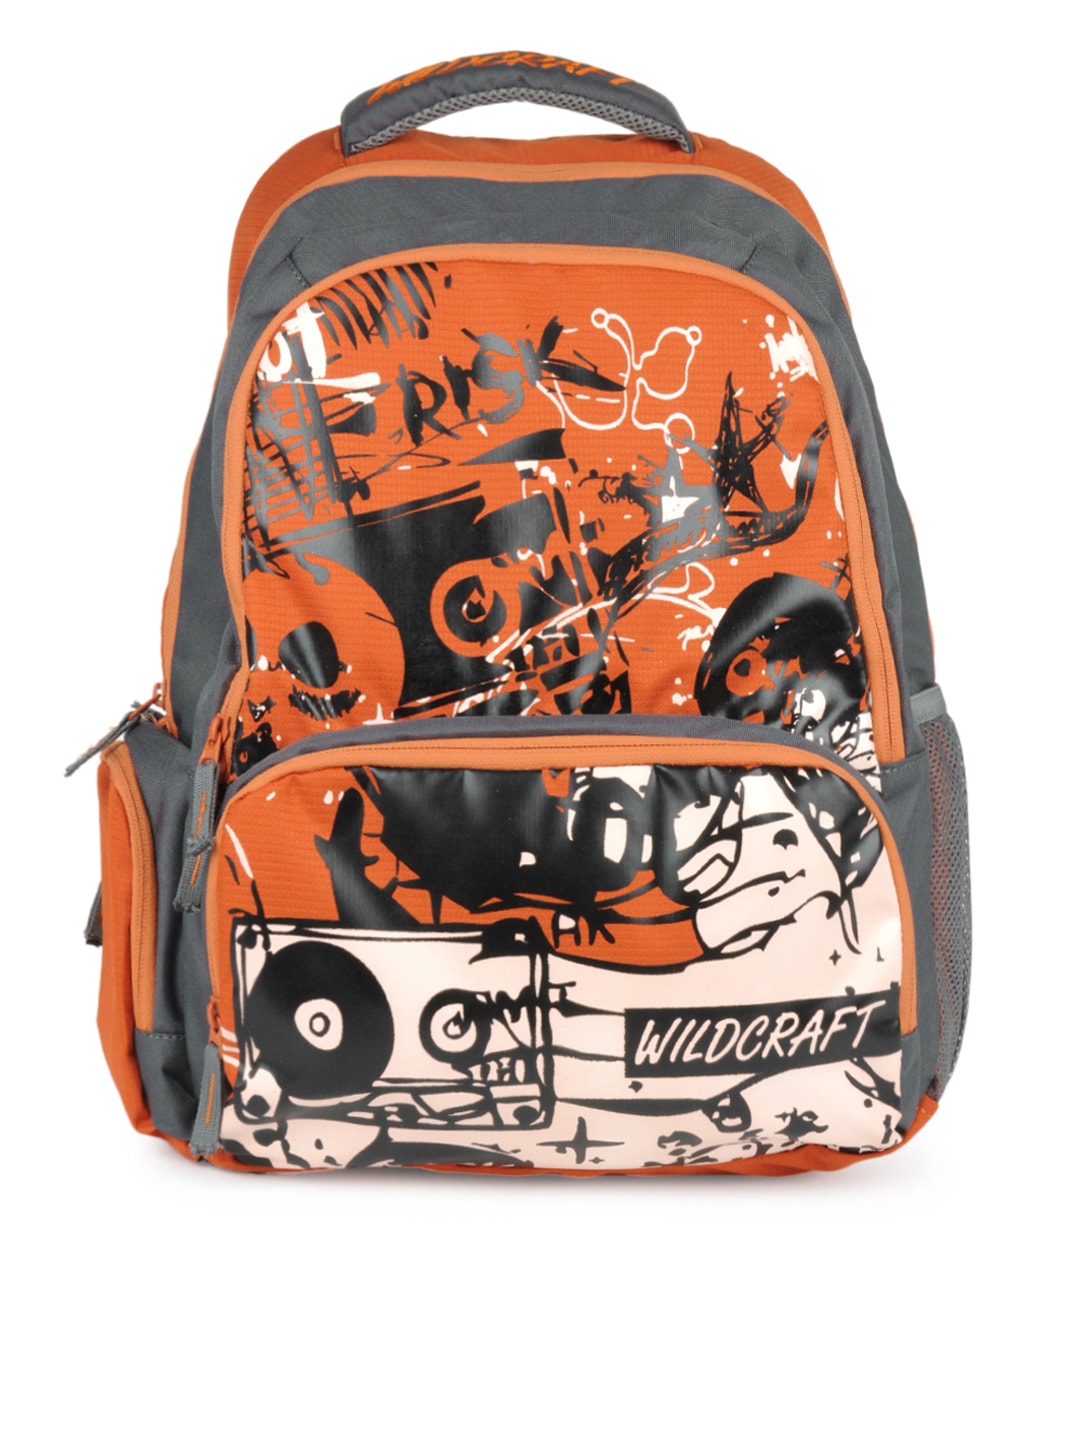 Wildcraft Unisex Orange & Grey Printed Laptop Backpack